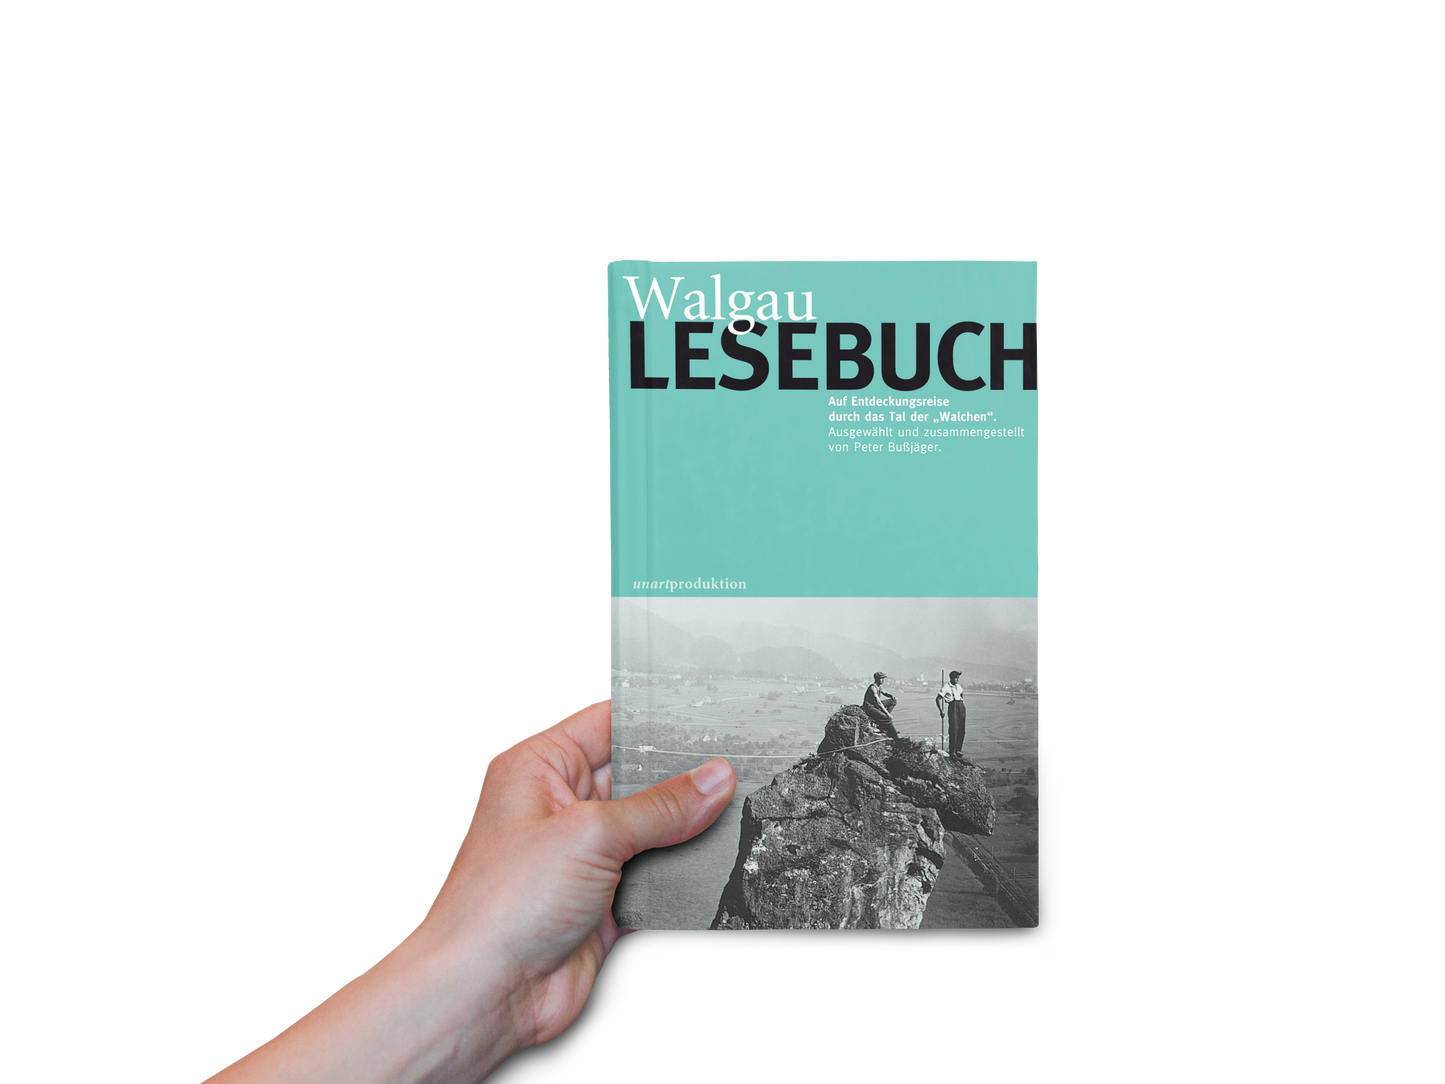 Walgau LESEBUCH